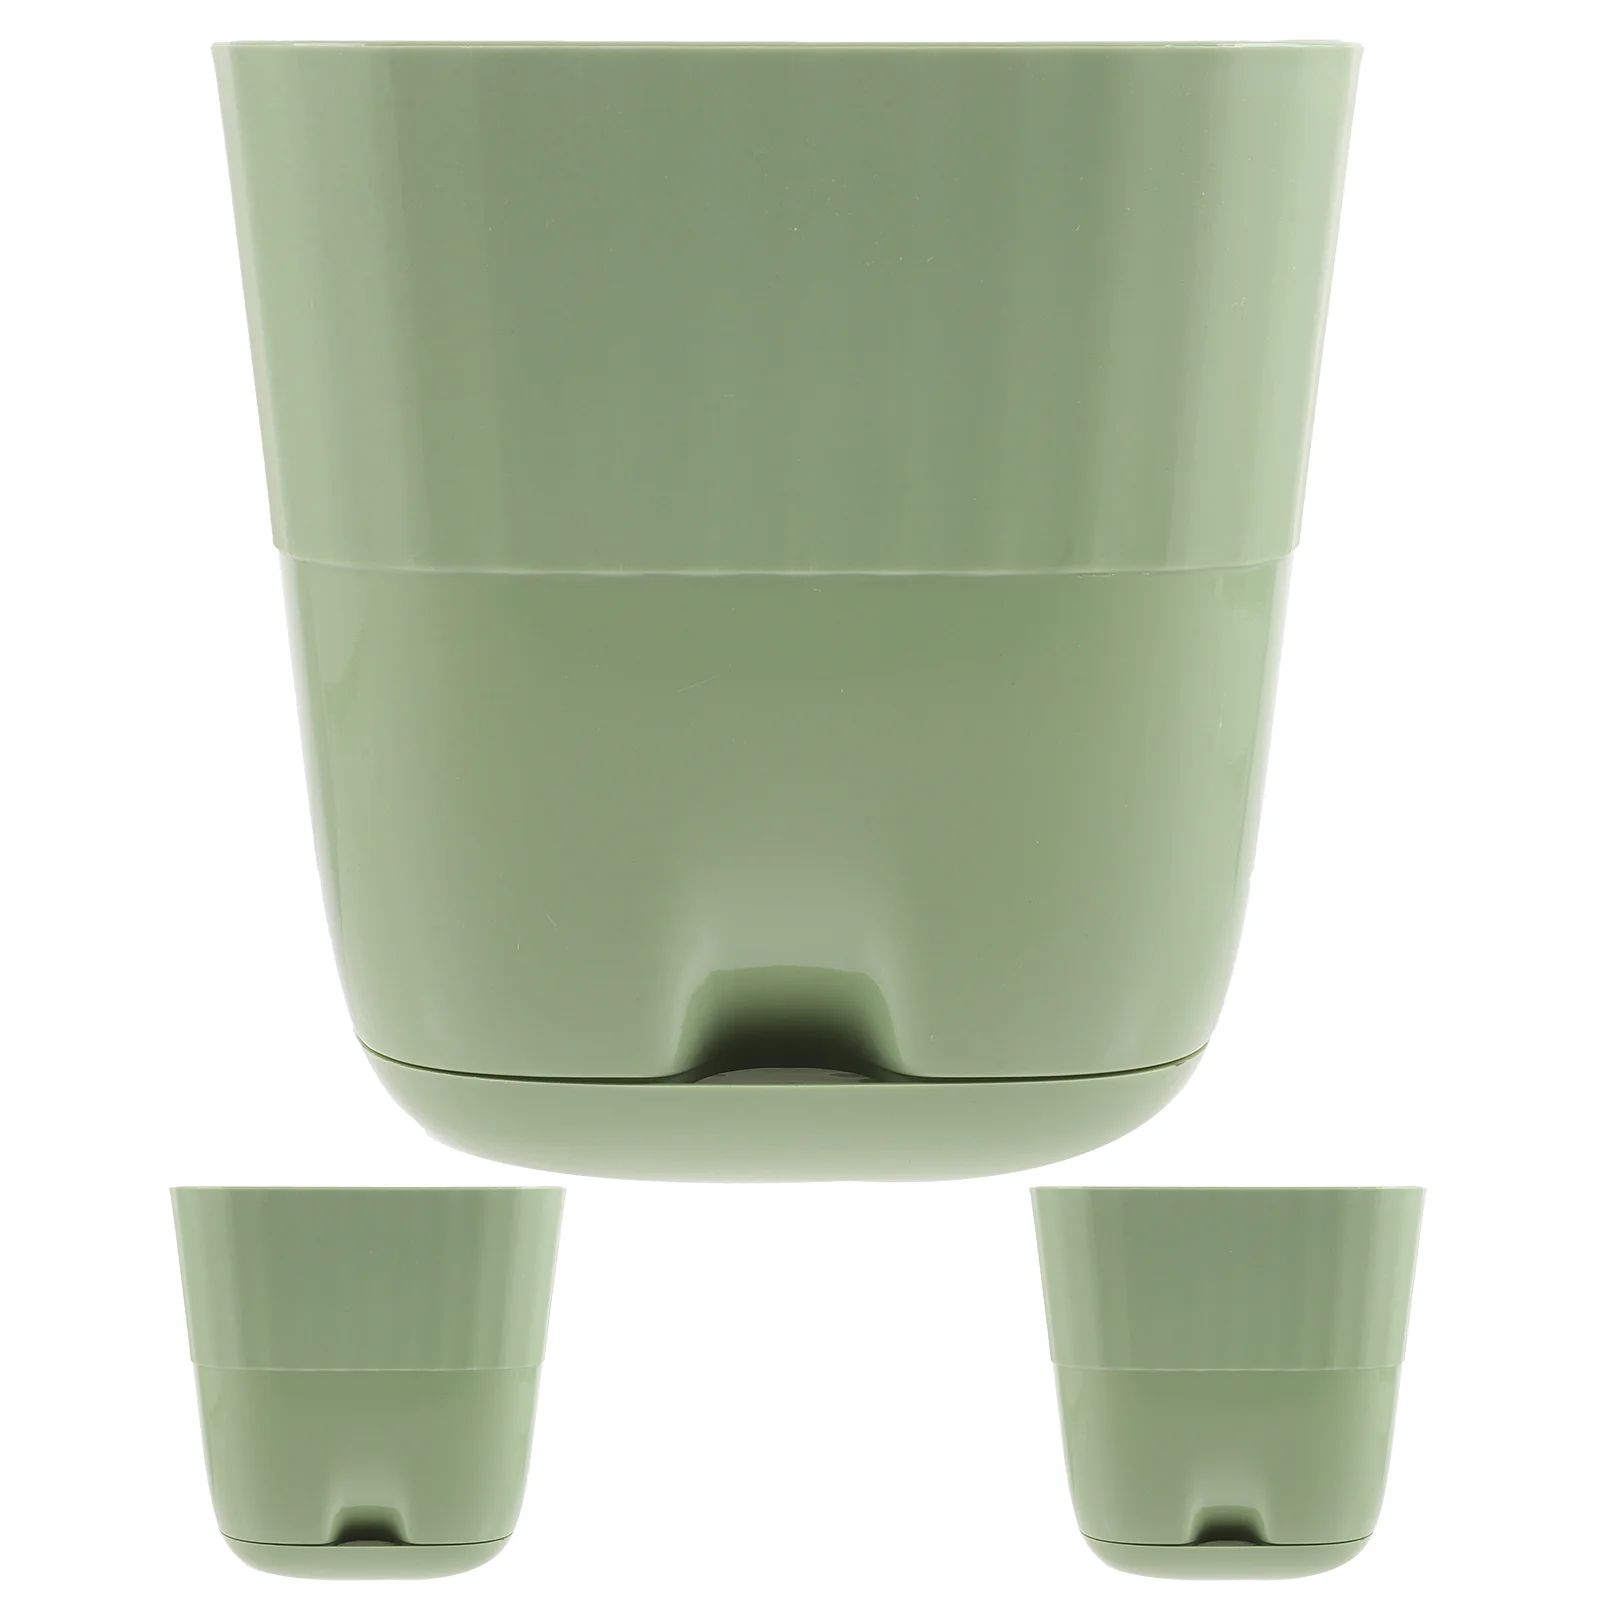 

3 Pcs Flower Pot Planter Drainage Plastic Bonsai Pots Outdoor Holes Self Watering Planters Succulent Home Container Office